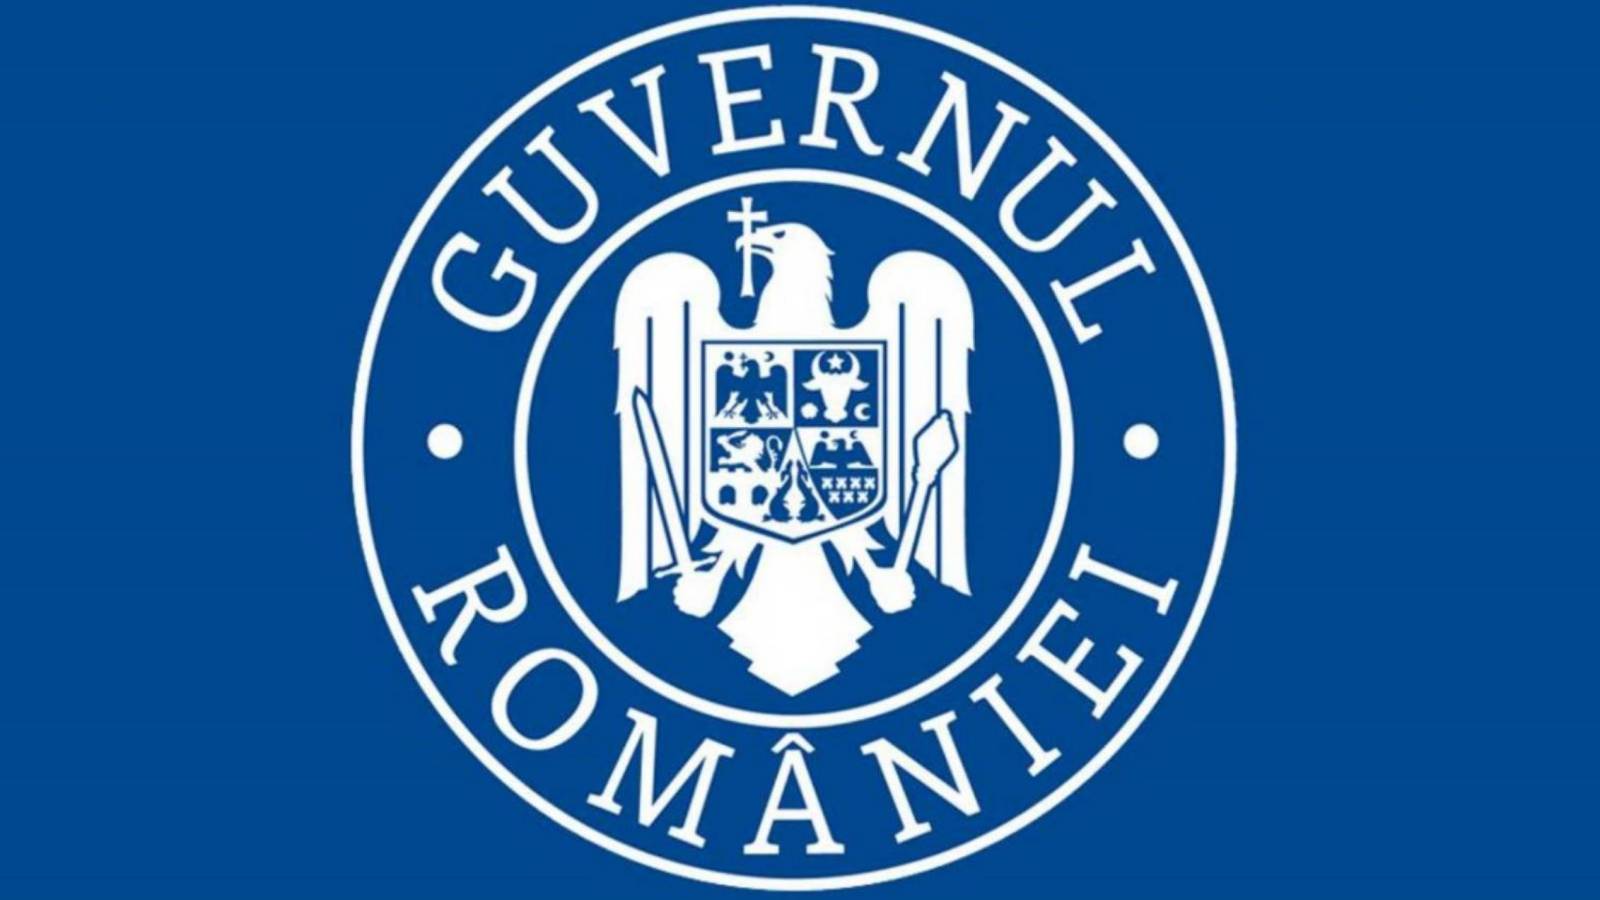 Teilquarantäne des rumänischen Regierungsdokuments